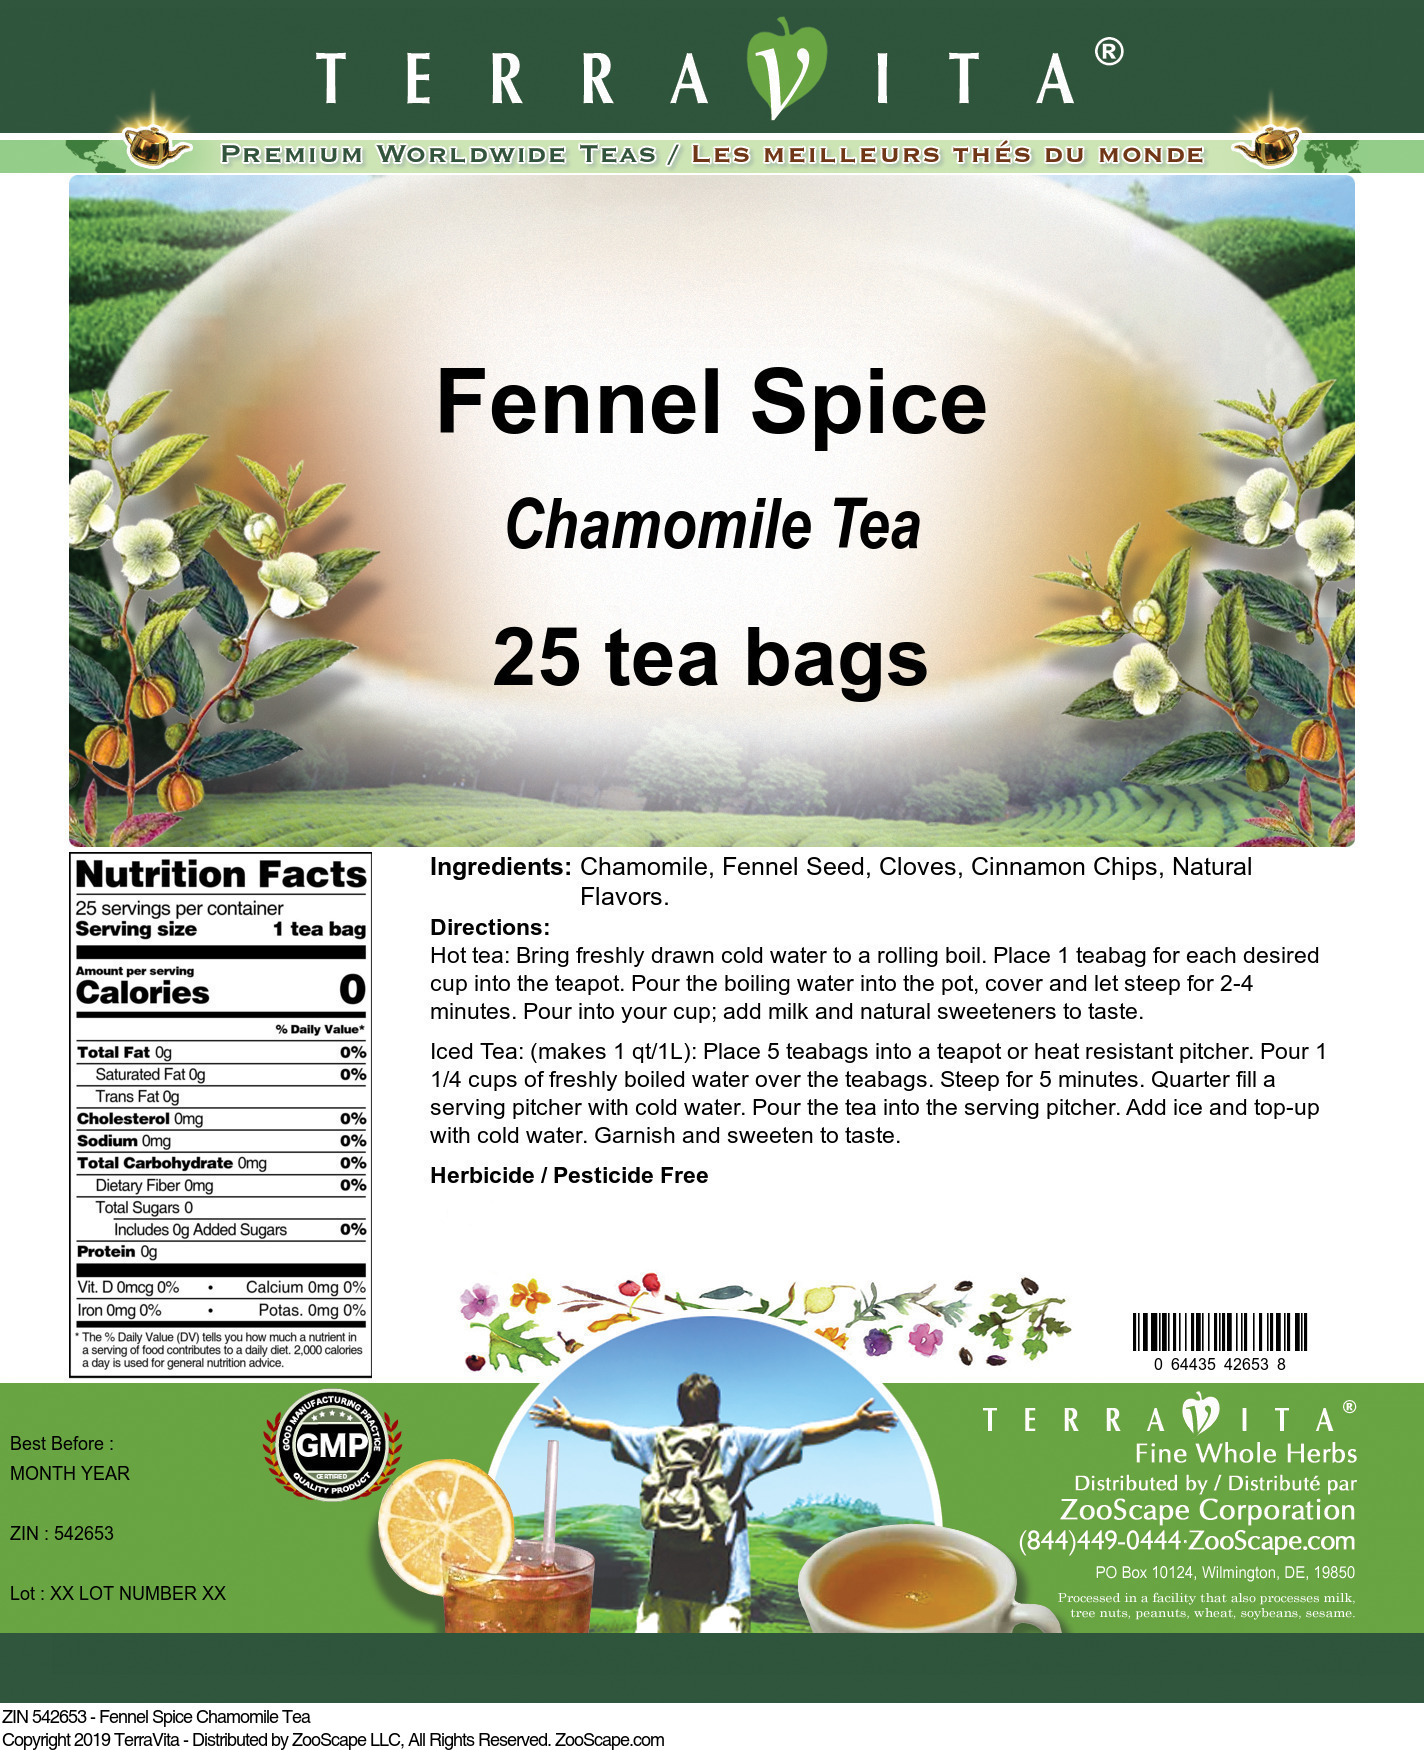 Fennel Spice Chamomile Tea - Label